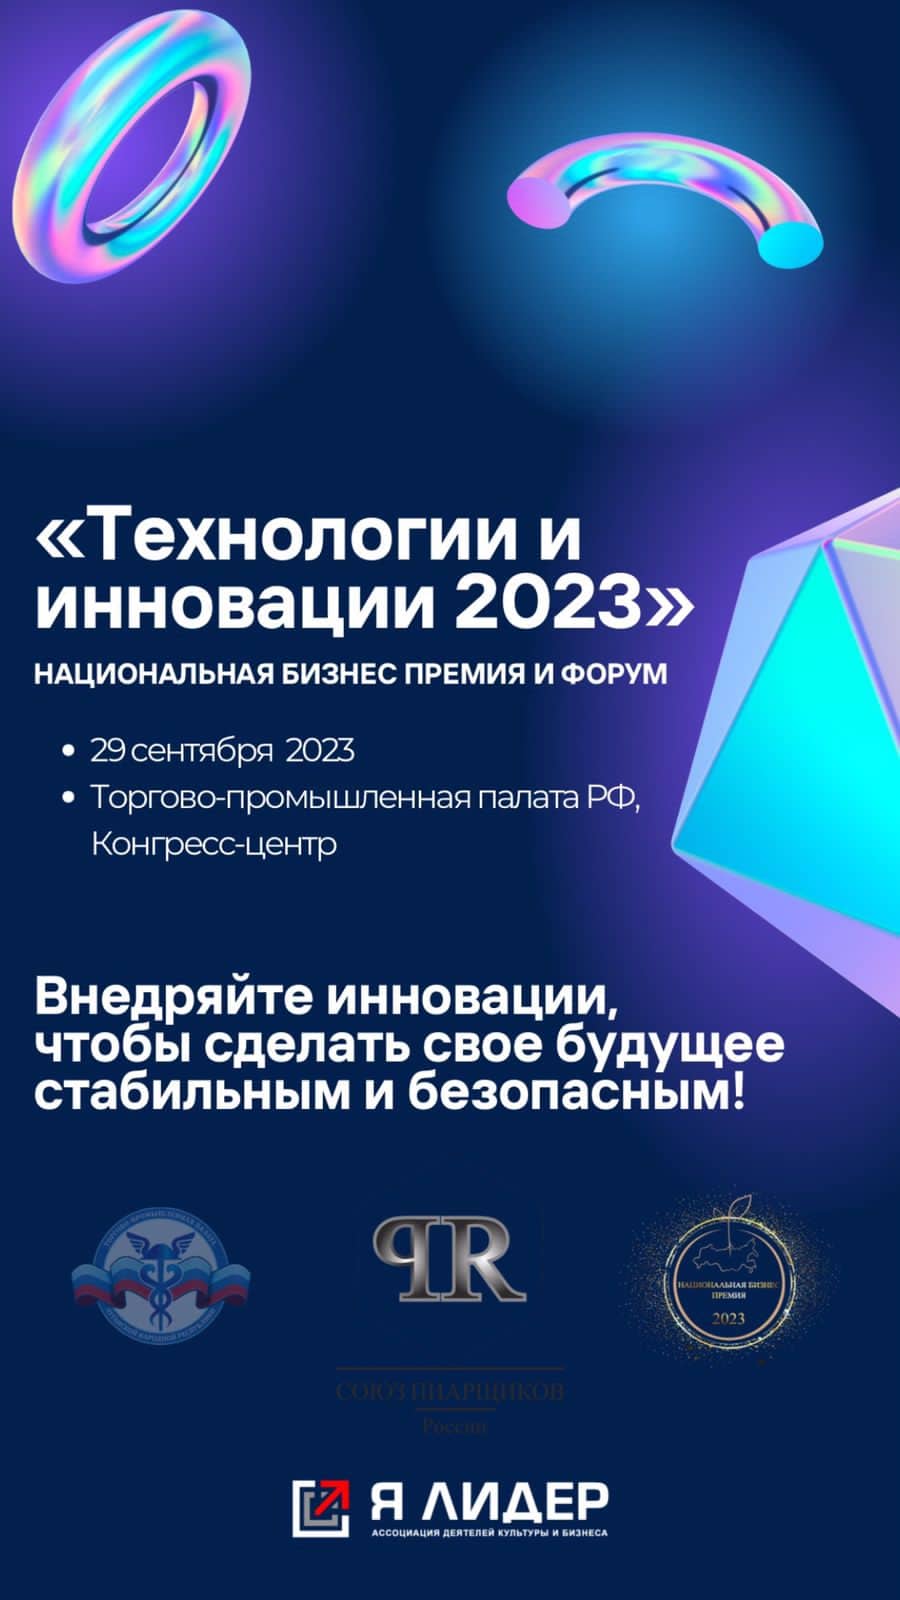 29 сентября в рамках премии «Технологии и инновации 2023» пройдет форум